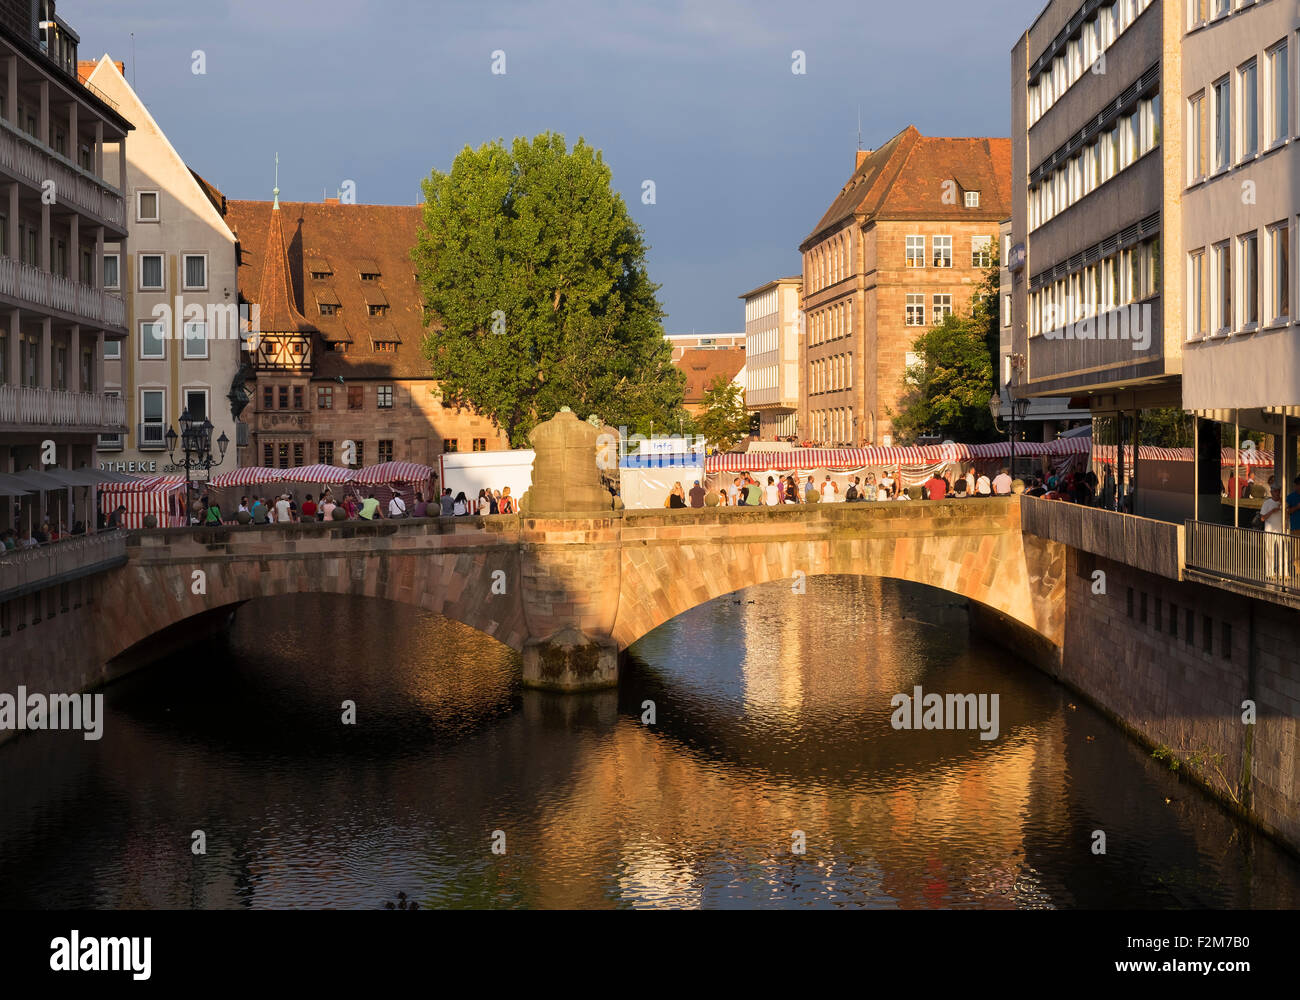 Allemagne, Nuremberg, musée pont sur la rivière Pegnitz Banque D'Images